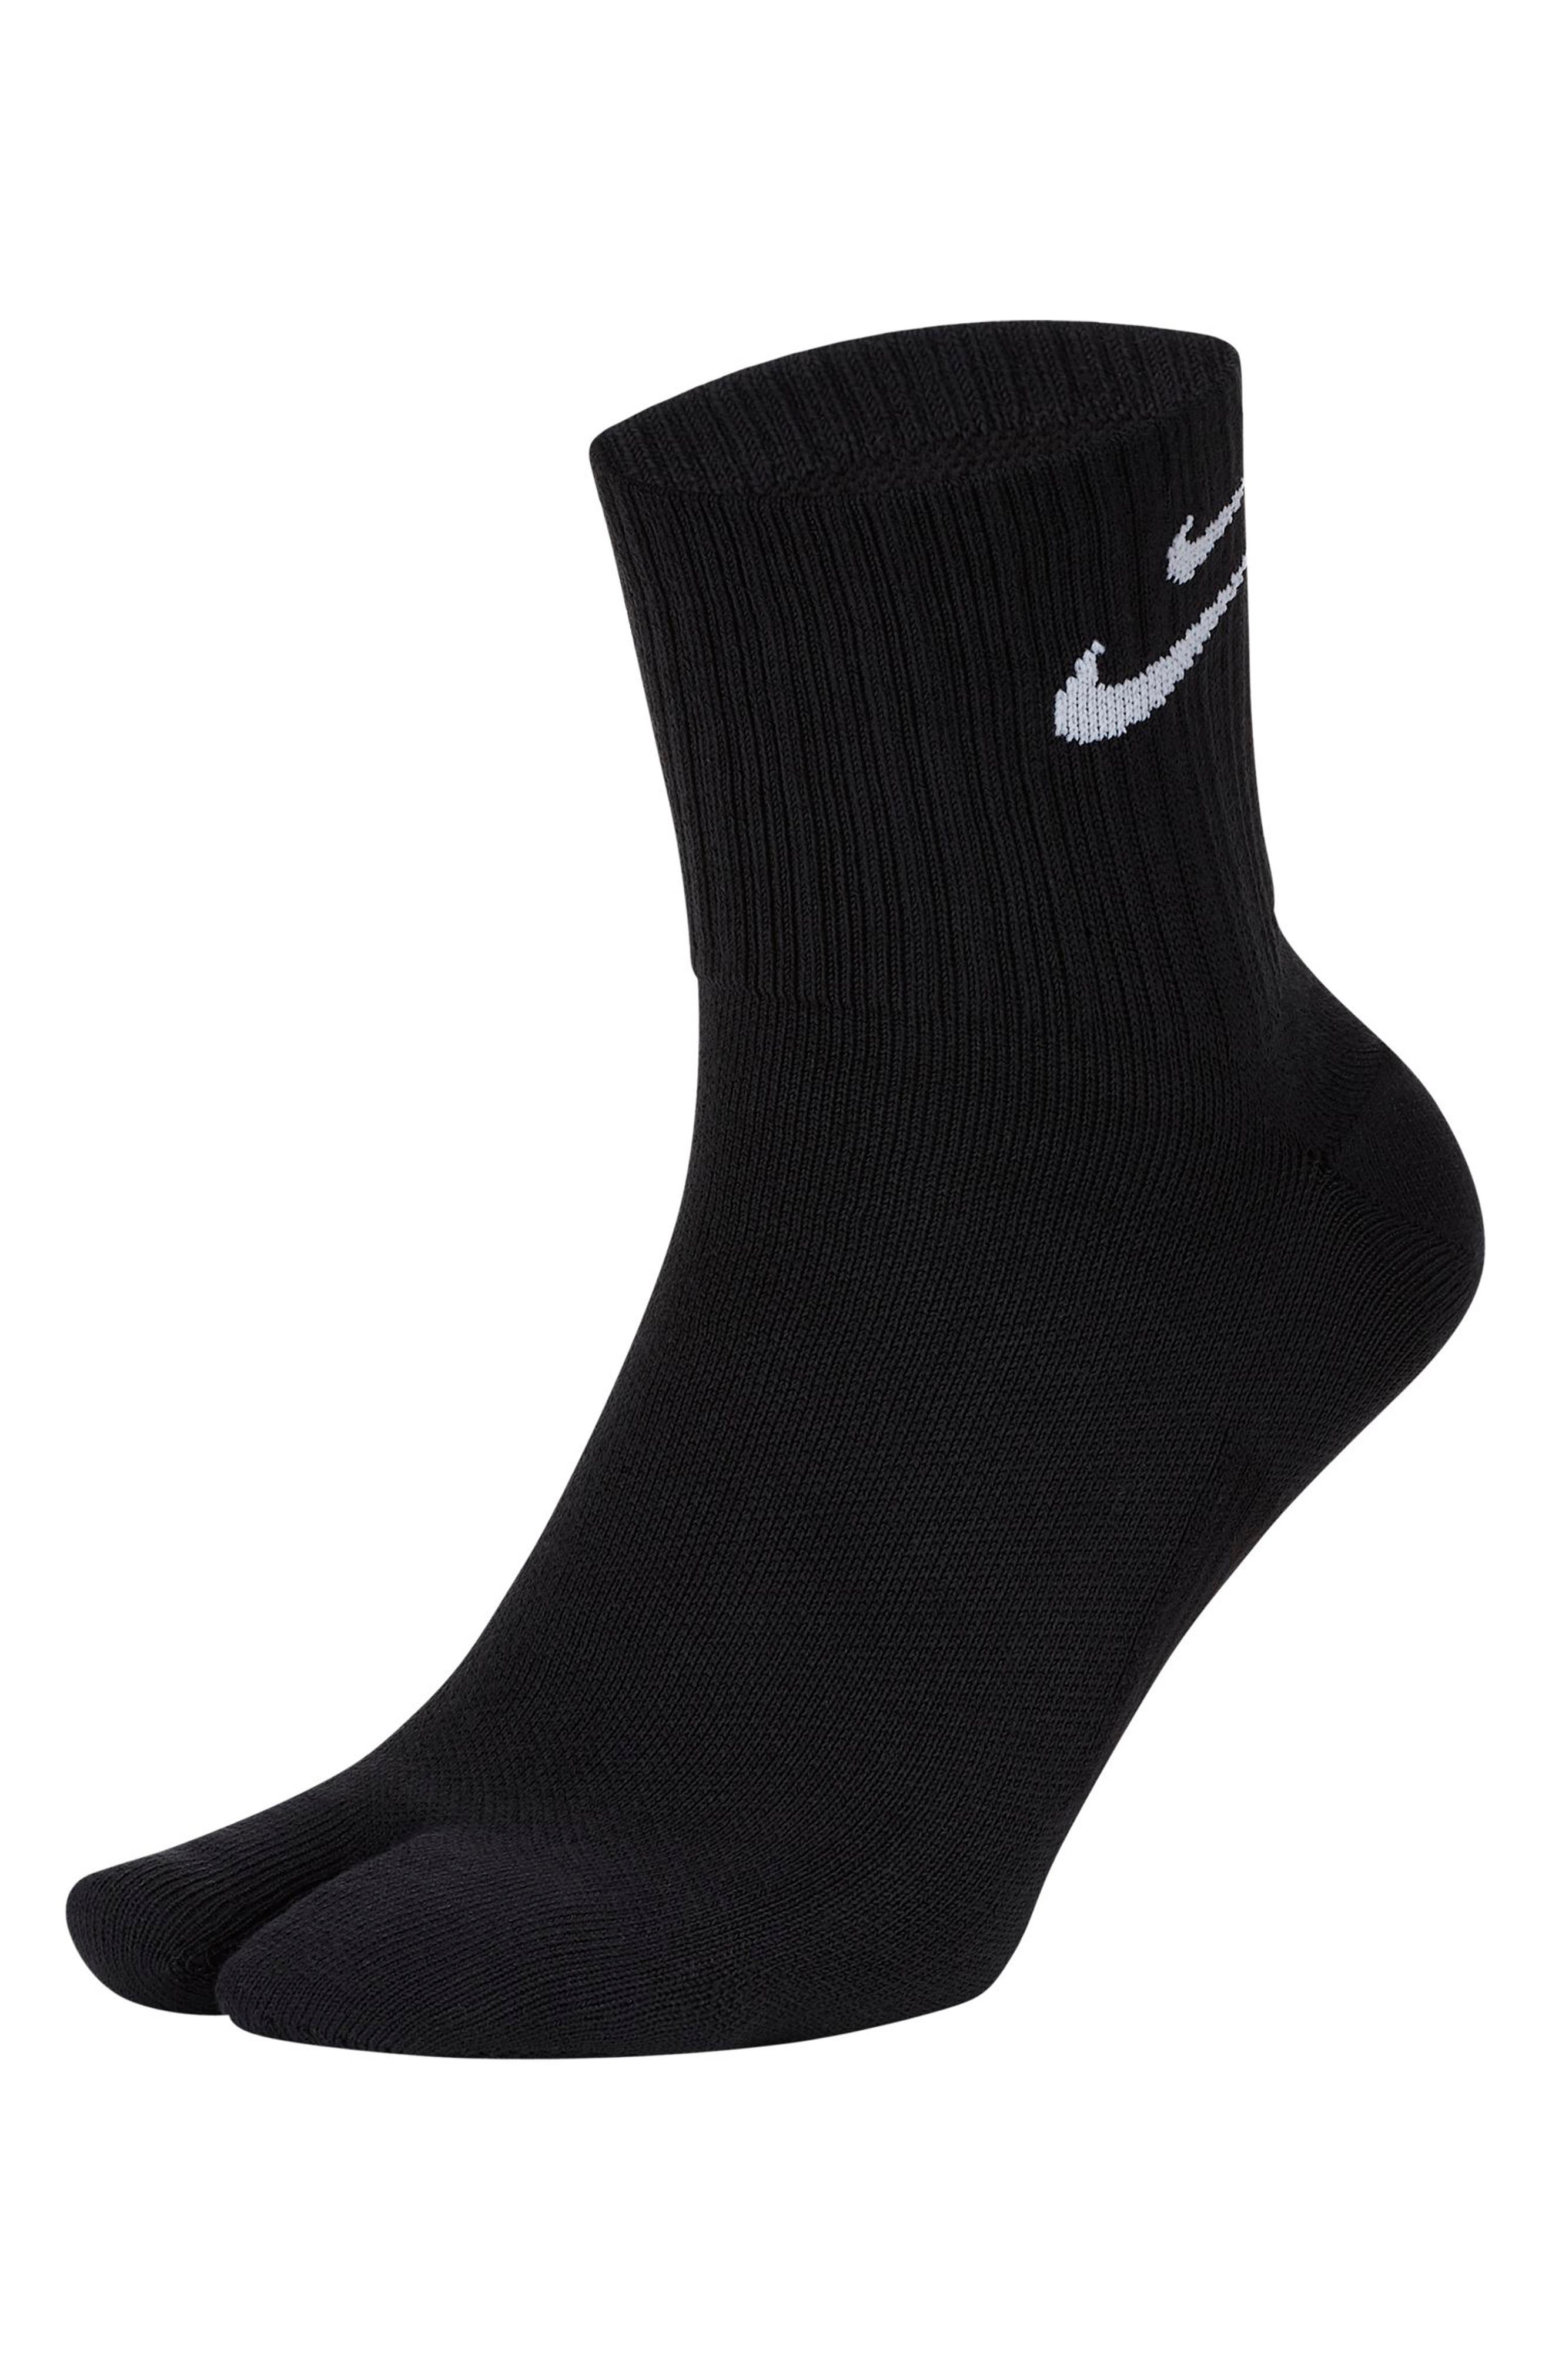 wildcard ankle socks